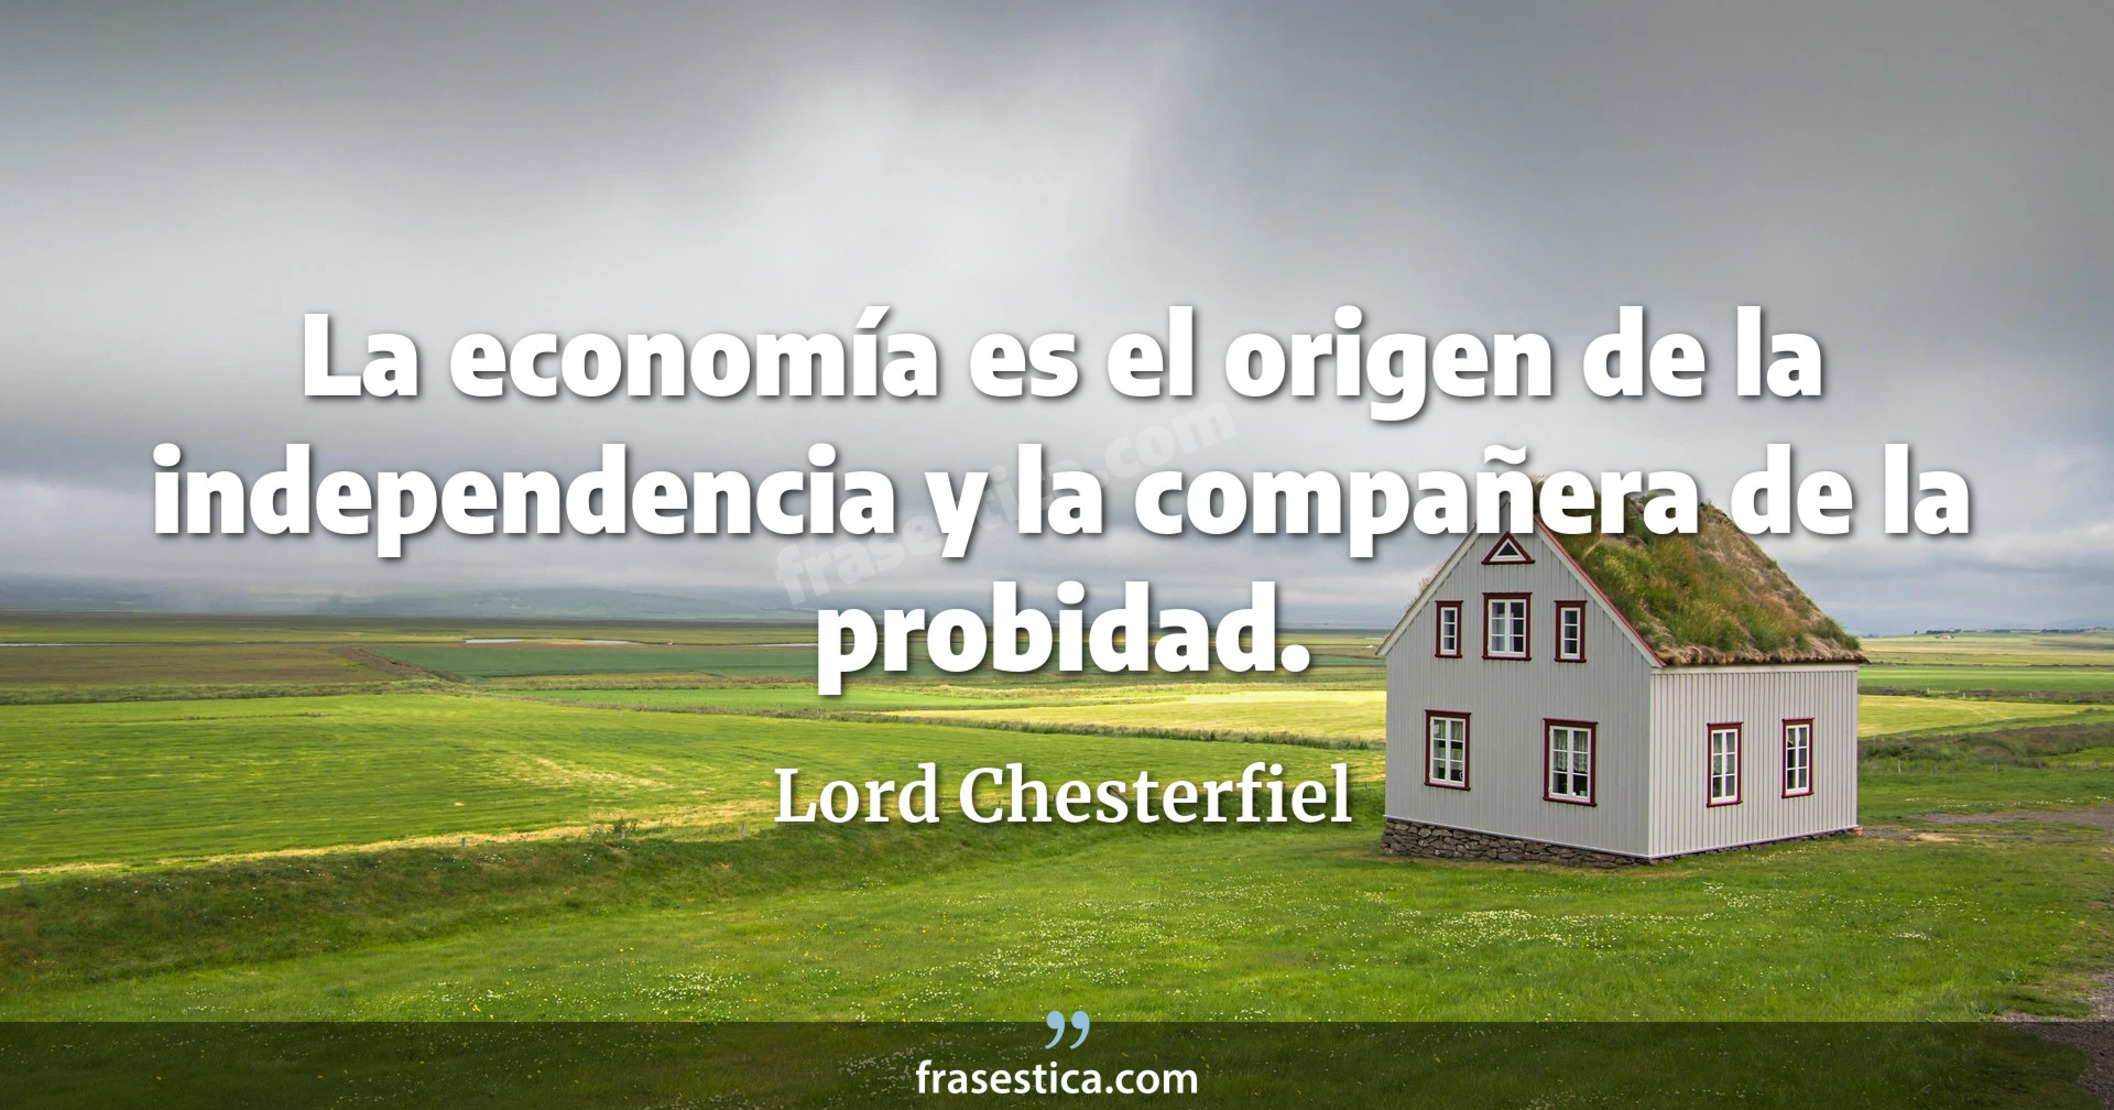 La economía es el origen de la independencia y la compañera de la probidad. - Lord Chesterfiel